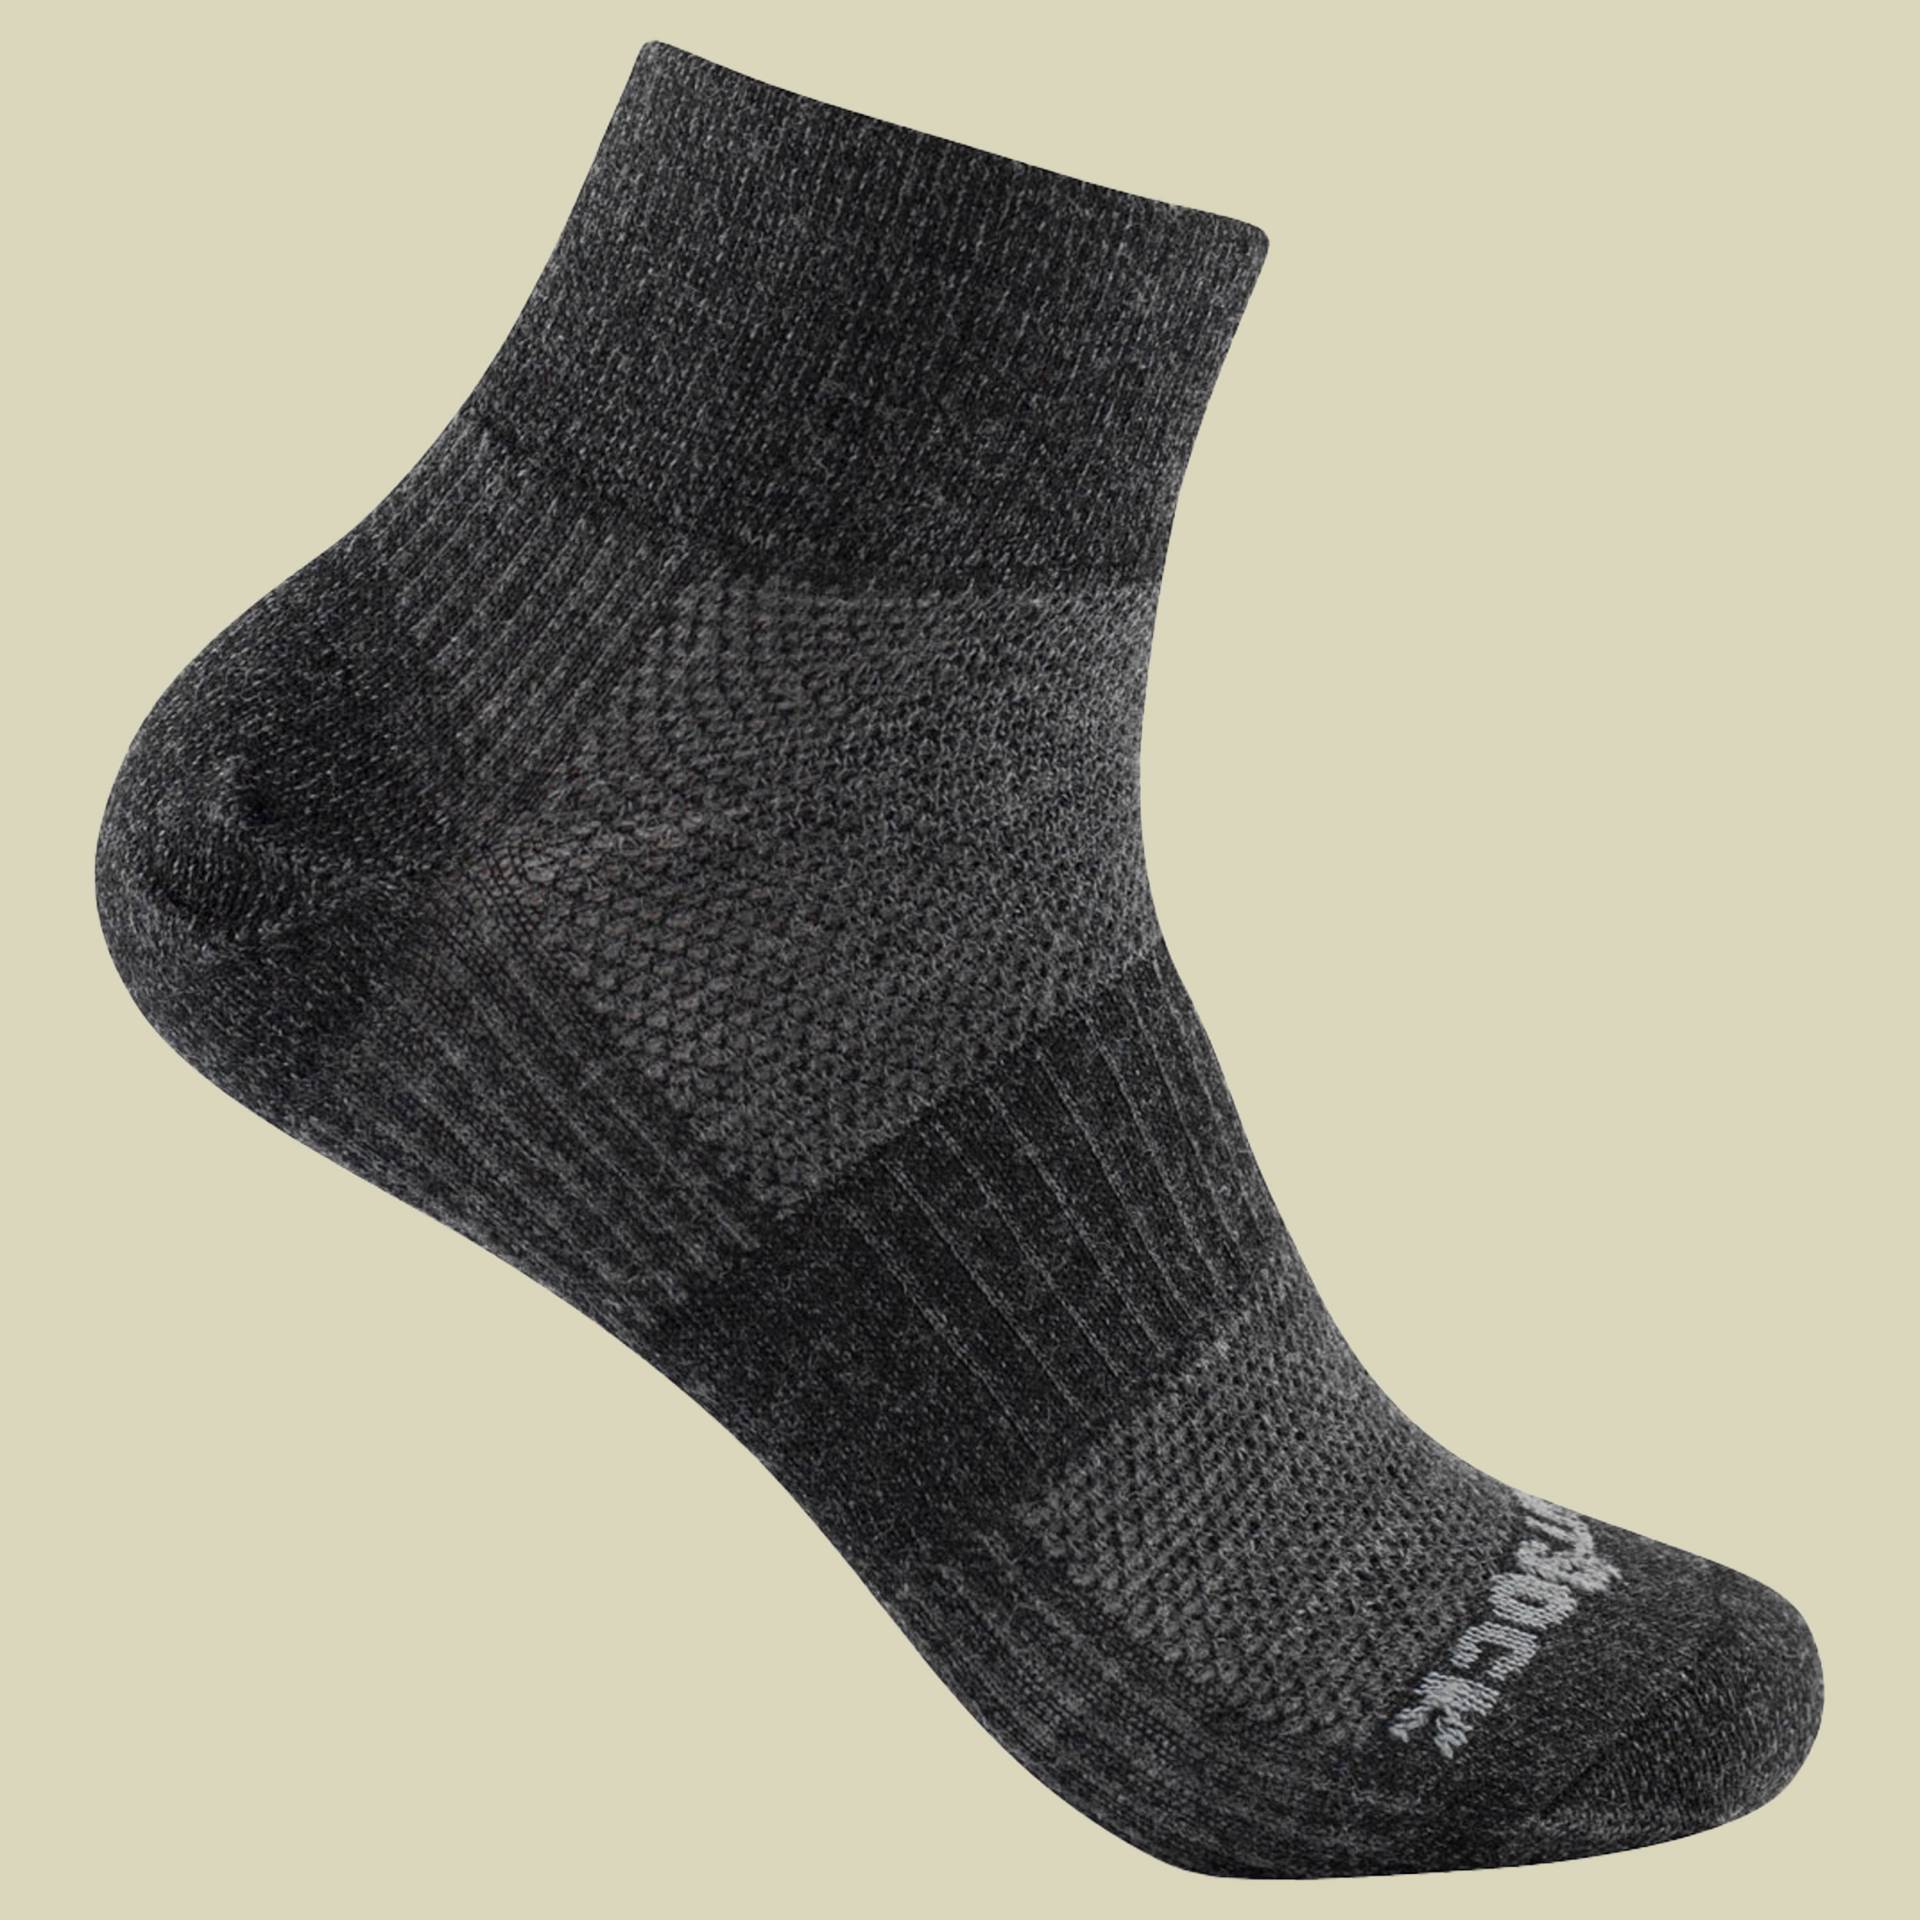 Merino Coolmesh II Quarter Größe 45,5-49 (XL) Farbe grey black matt von Wrightsock